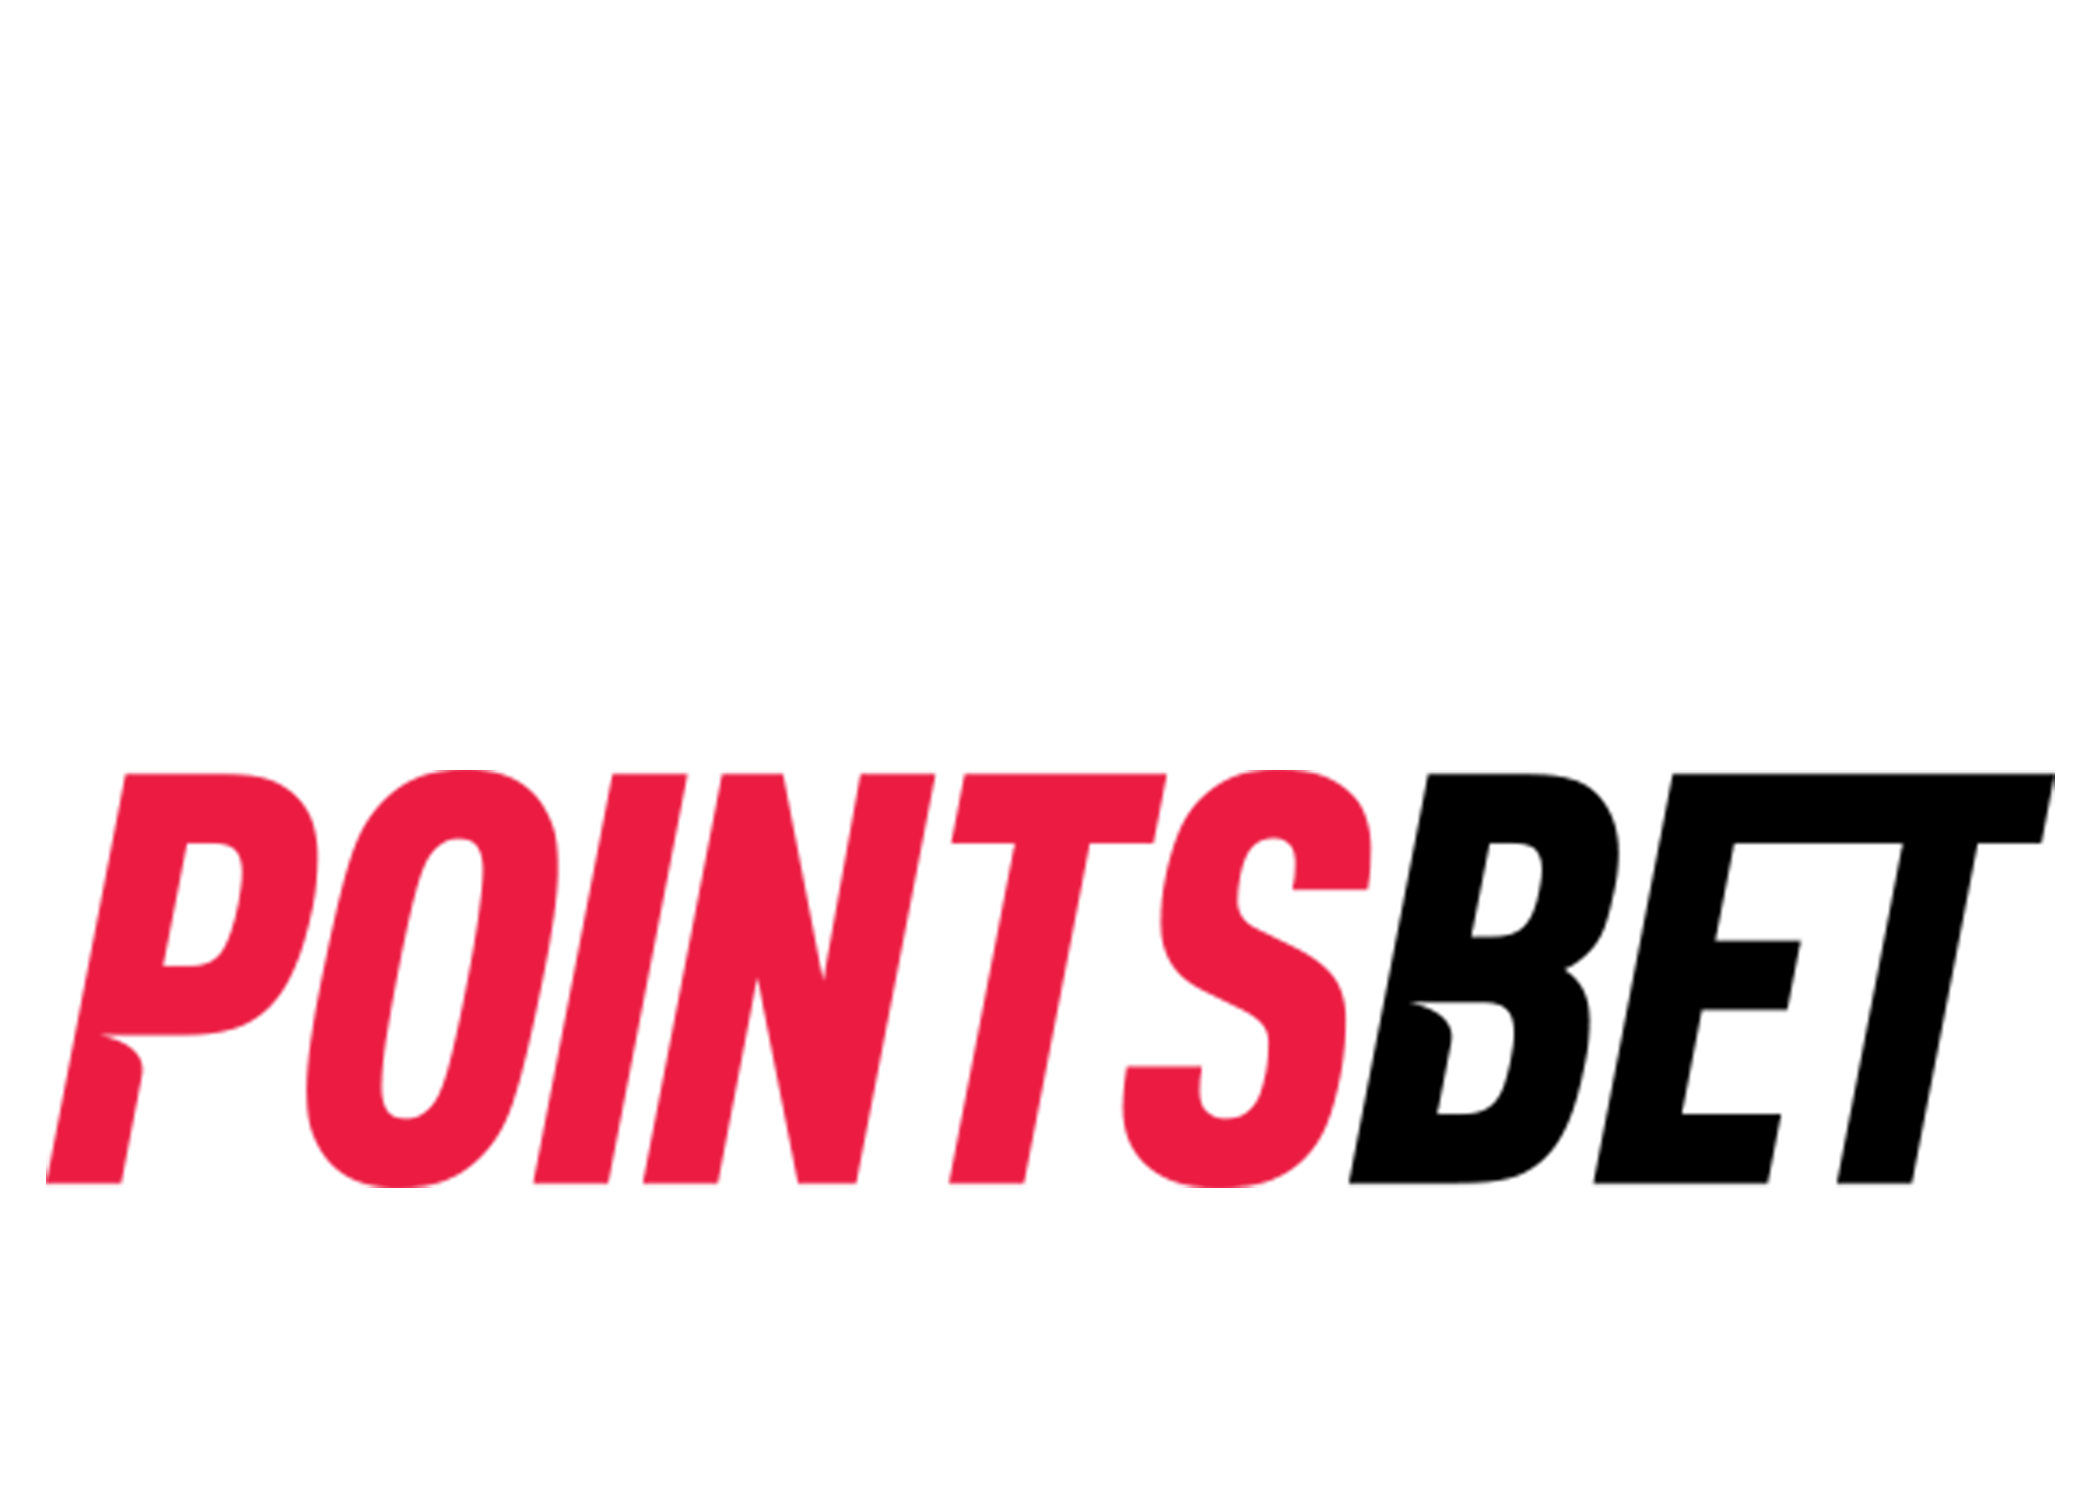 Australian Stock Report - PointsBet Holdings Ltd.